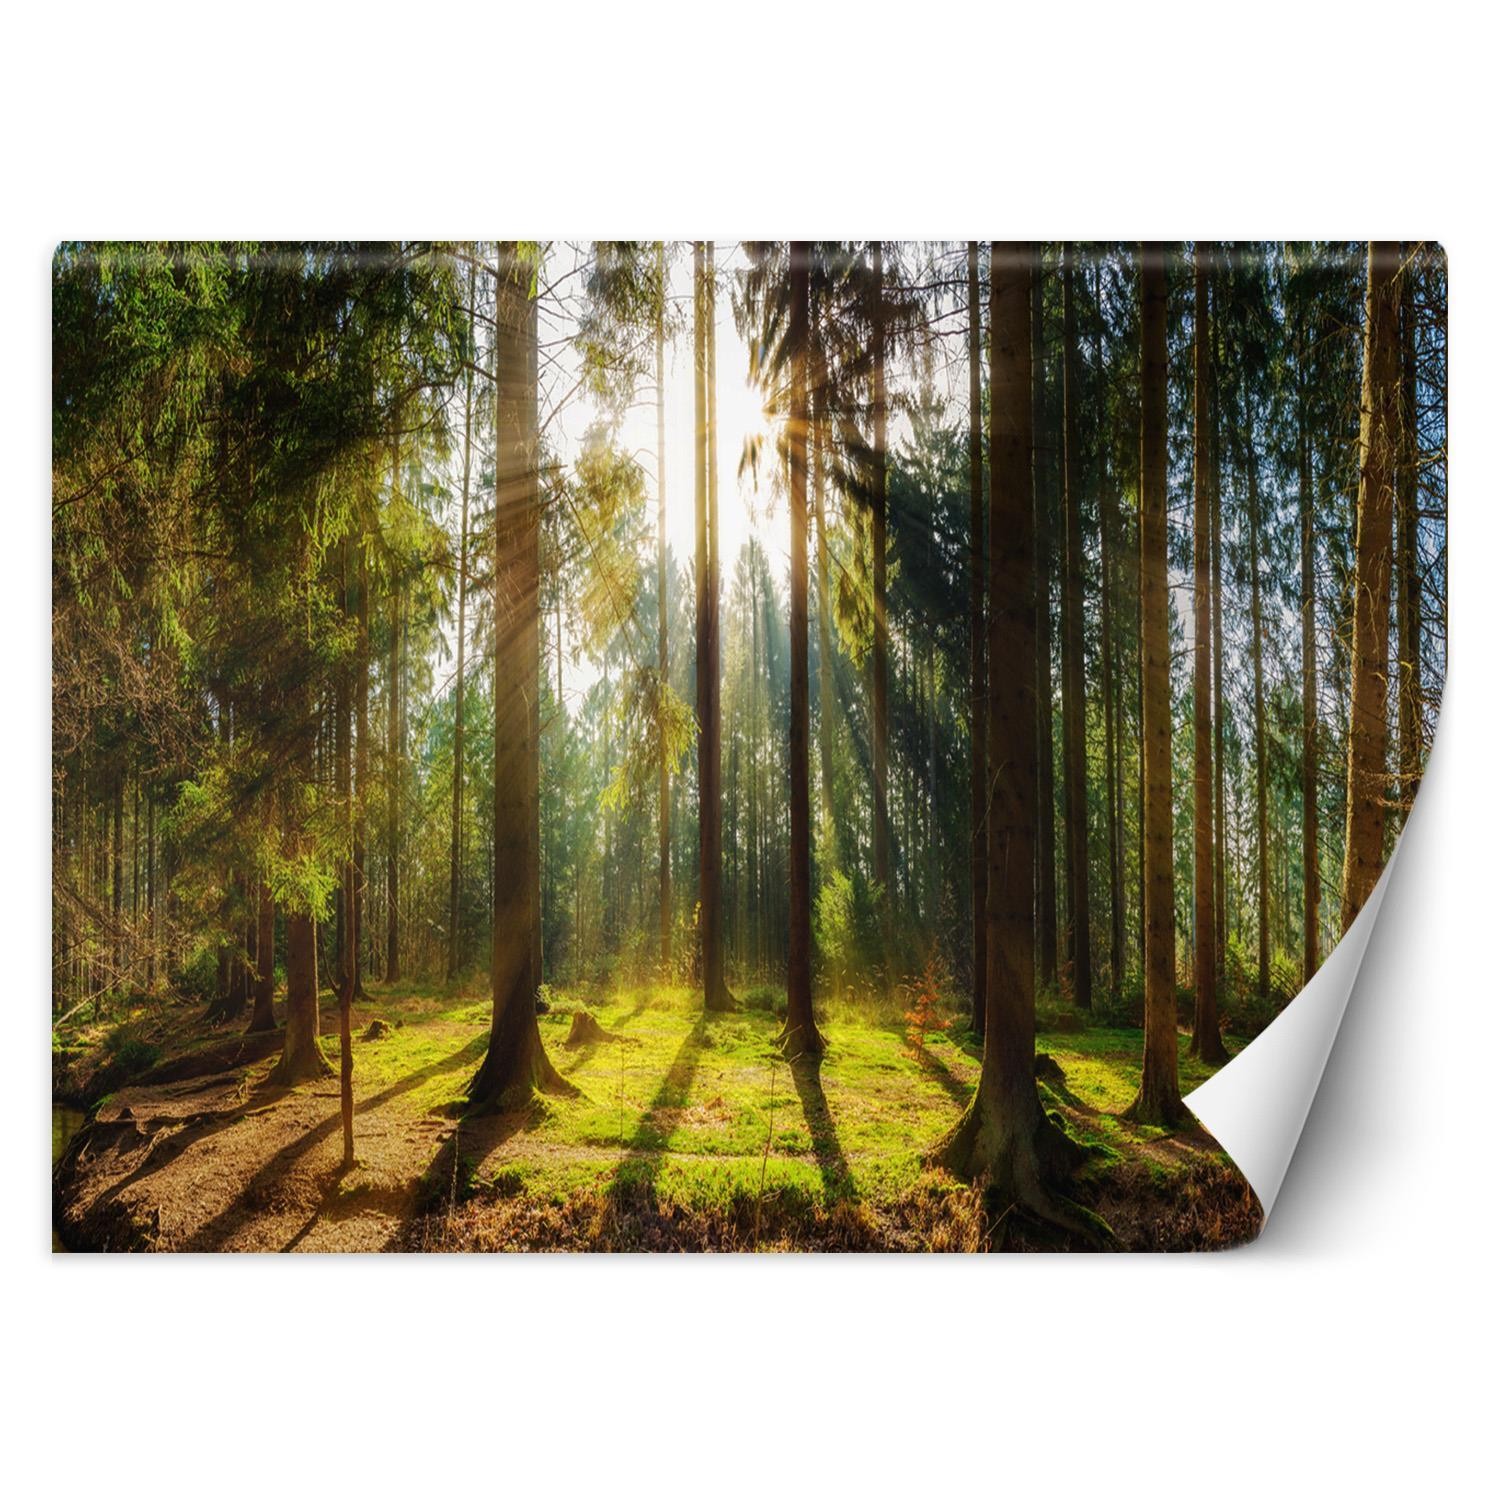 Trend24 – Behang – Bos In De Zon – Behangpapier – Fotobehang Natuur – Behang Woonkamer – 250x175x2 cm – Incl. behanglijm